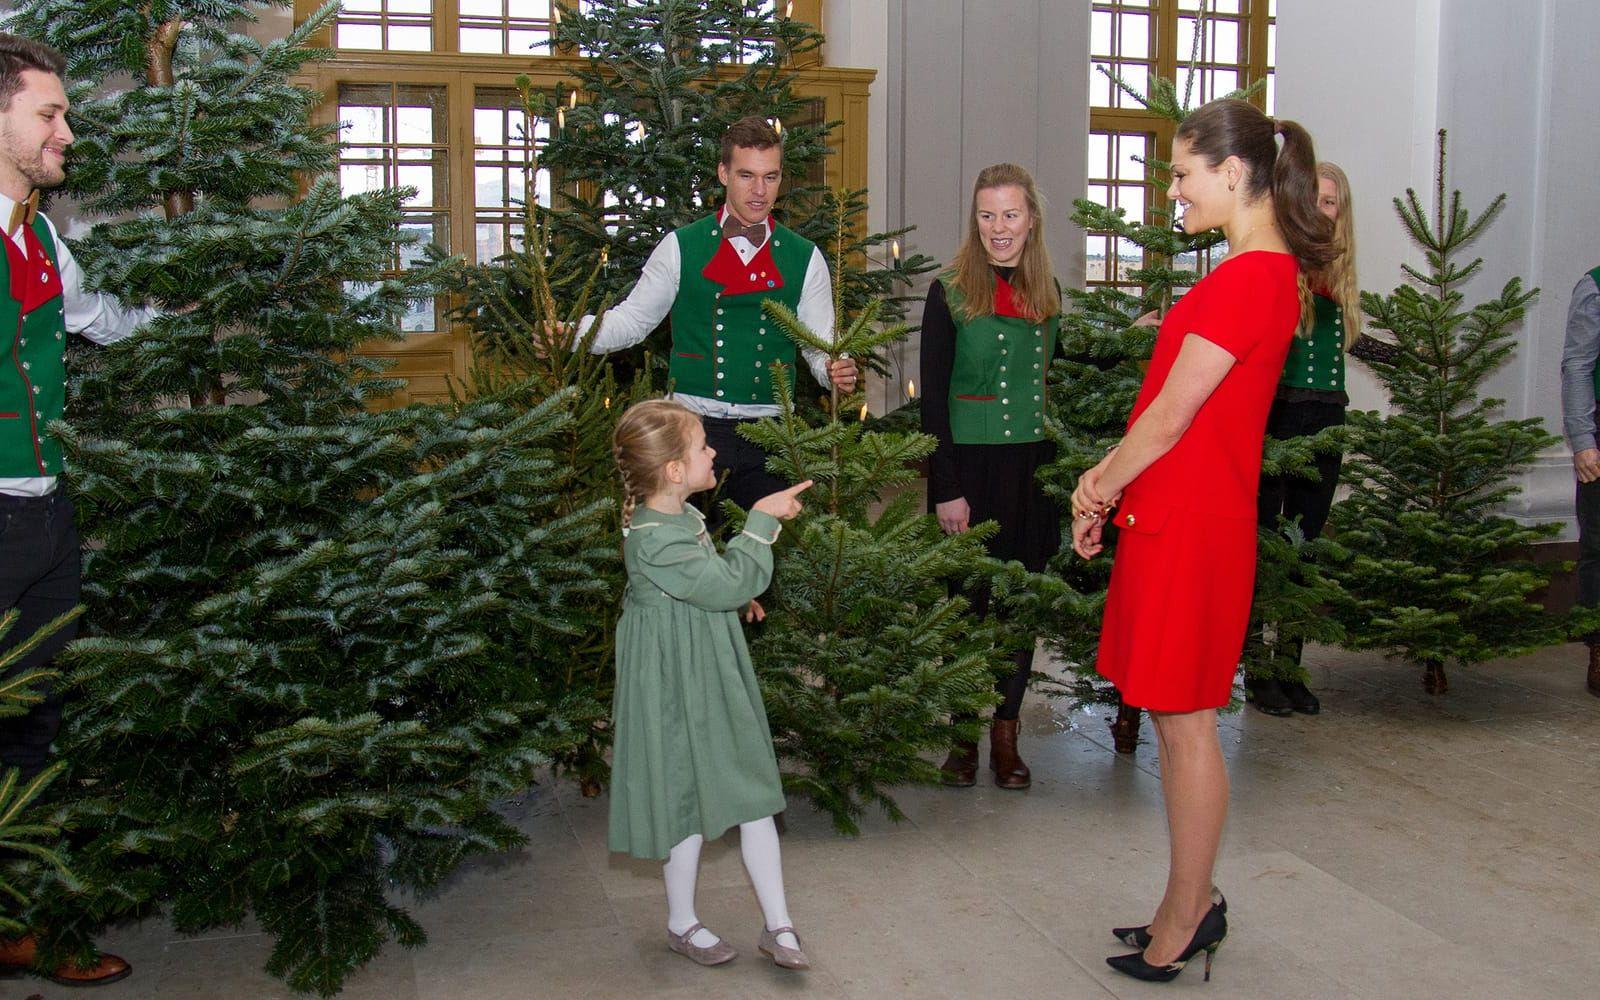 14 december: Kronprinsessan Victoria och prinsessan Estelle kommer i julstämning när studenter från SLU levererar julgranar. Foto: Garlöv, Kungahuset.se